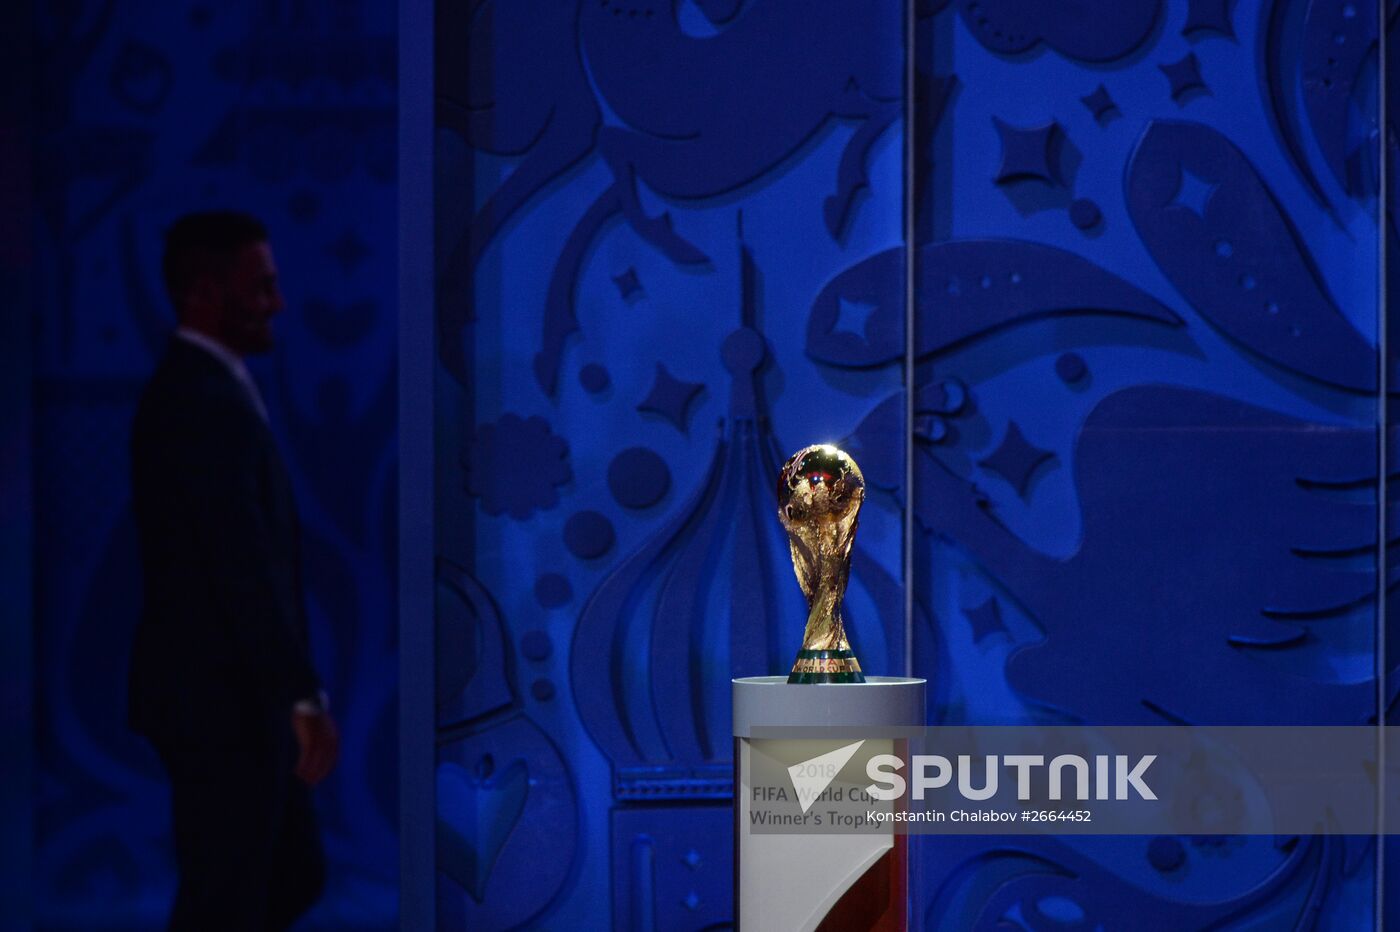 2018 FIFA World Cup Russia Preliminary Draw